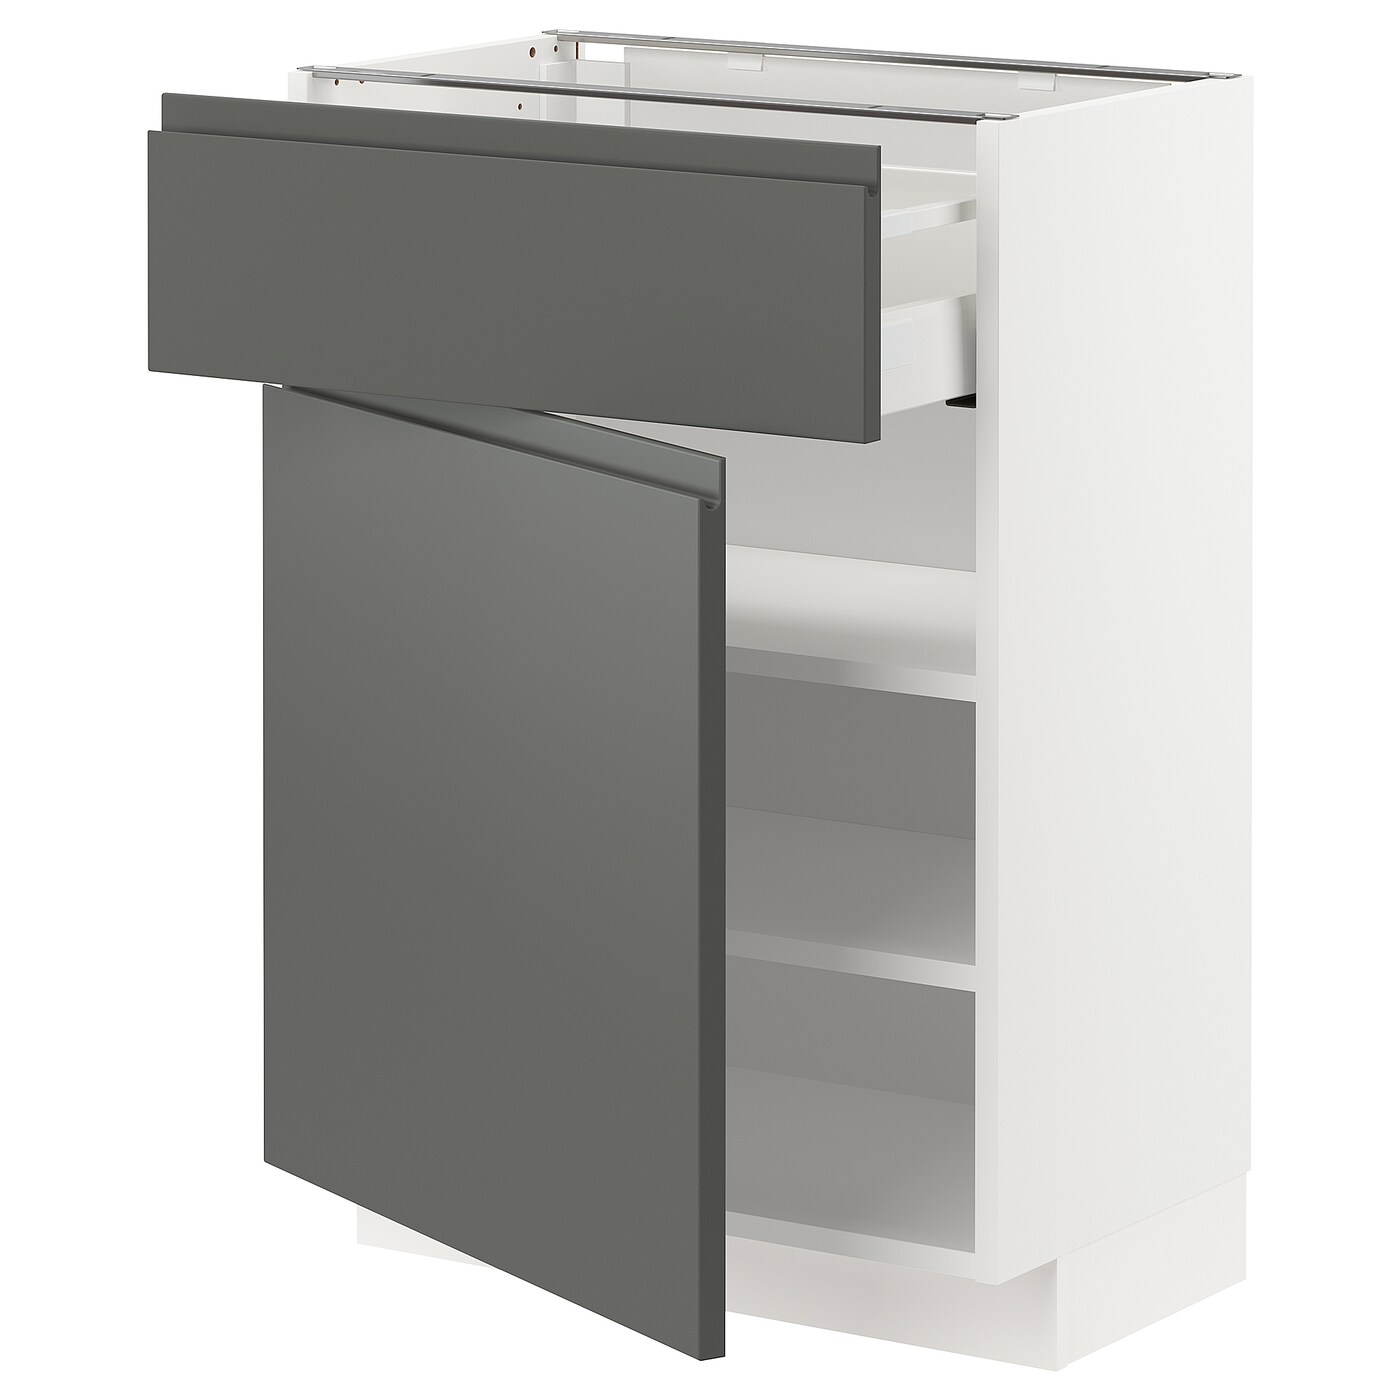 Напольный кухонный шкаф  - IKEA METOD MAXIMERA, 88x39x60см, белый/серый, МЕТОД МАКСИМЕРА ИКЕА